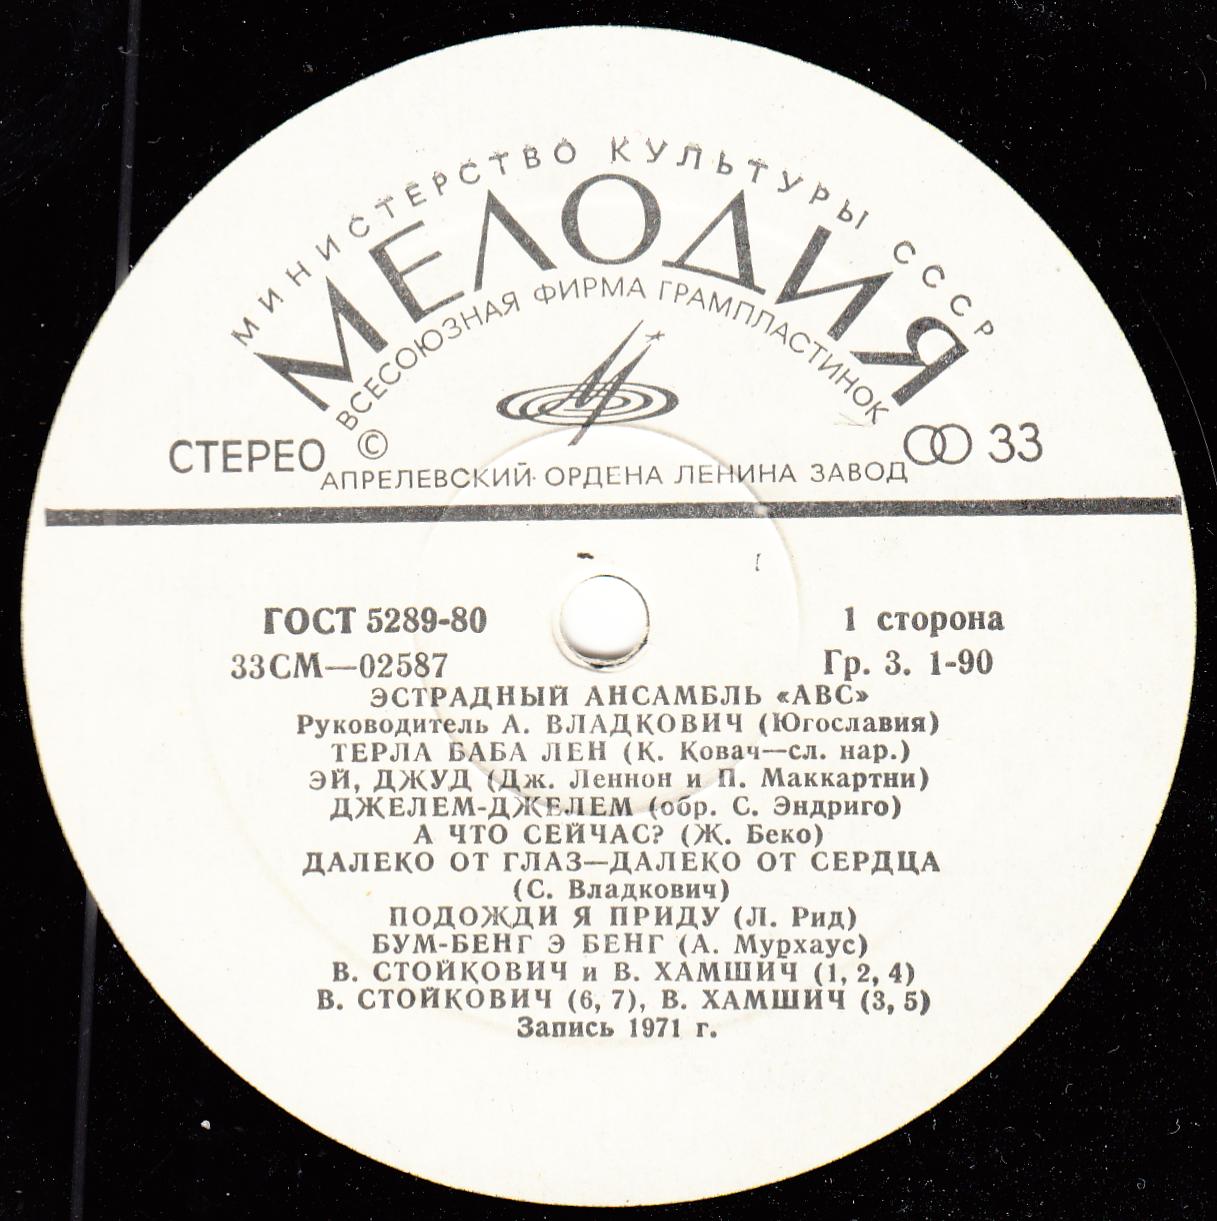 «АВС», эстрадный ансамбль (Югославия), руководитель – А. Владкович